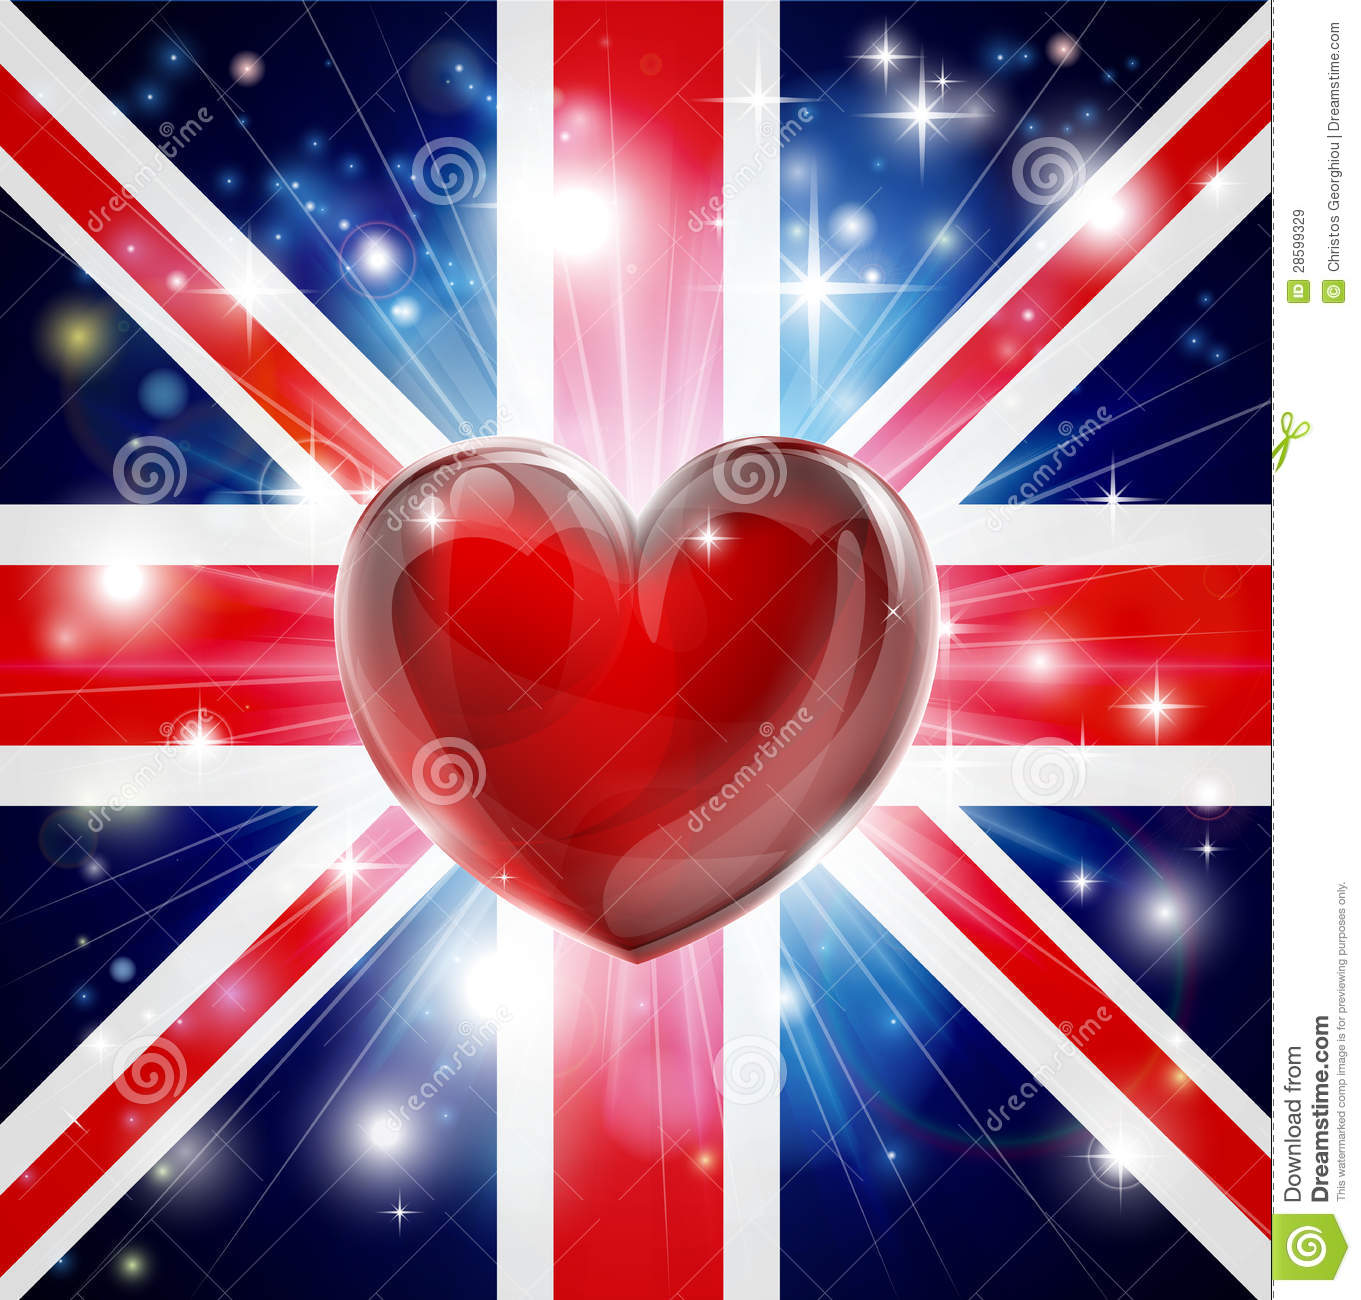 love-uk-flag-heart-background-28599329.jpg